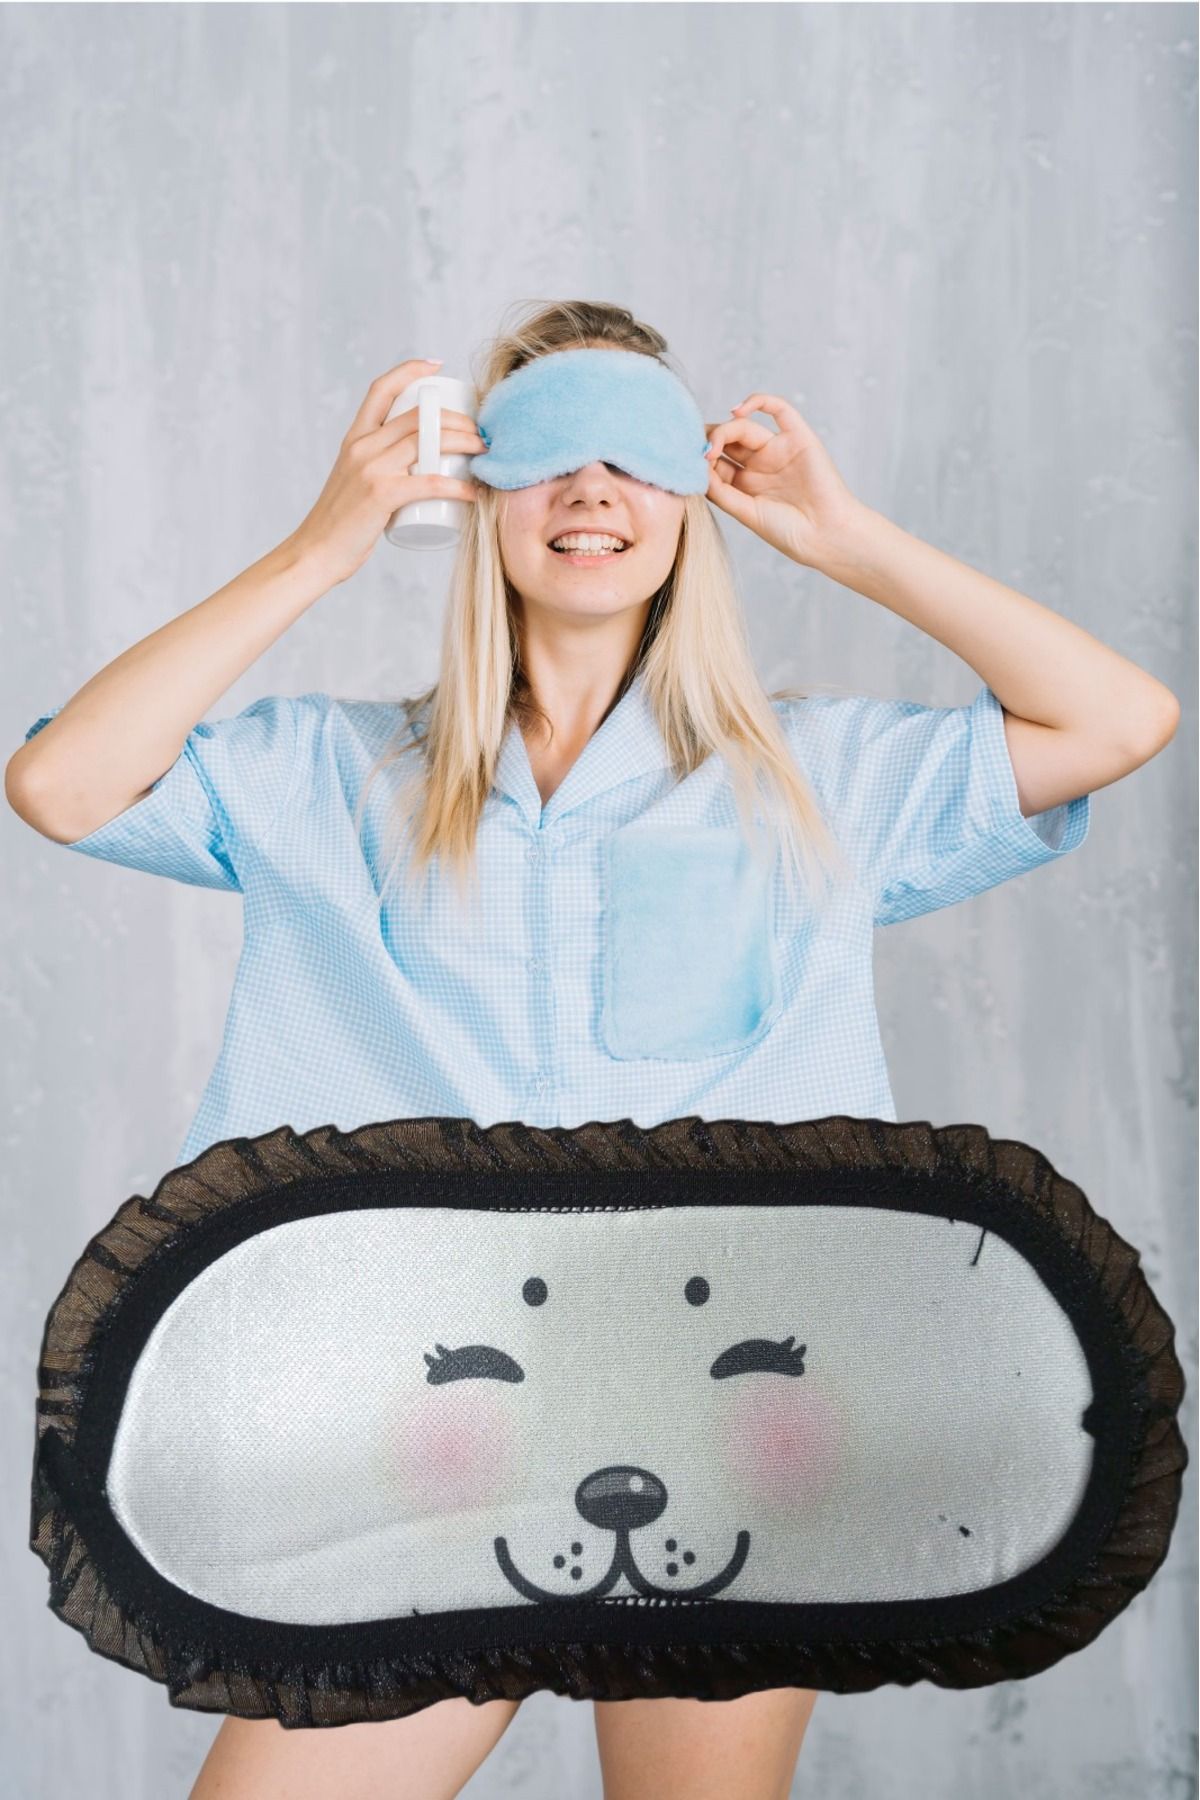 PEMBECİN Uyku Göz Bandı Maskesi Işık Önleyici Gözlük Maske Bant Eye Mask